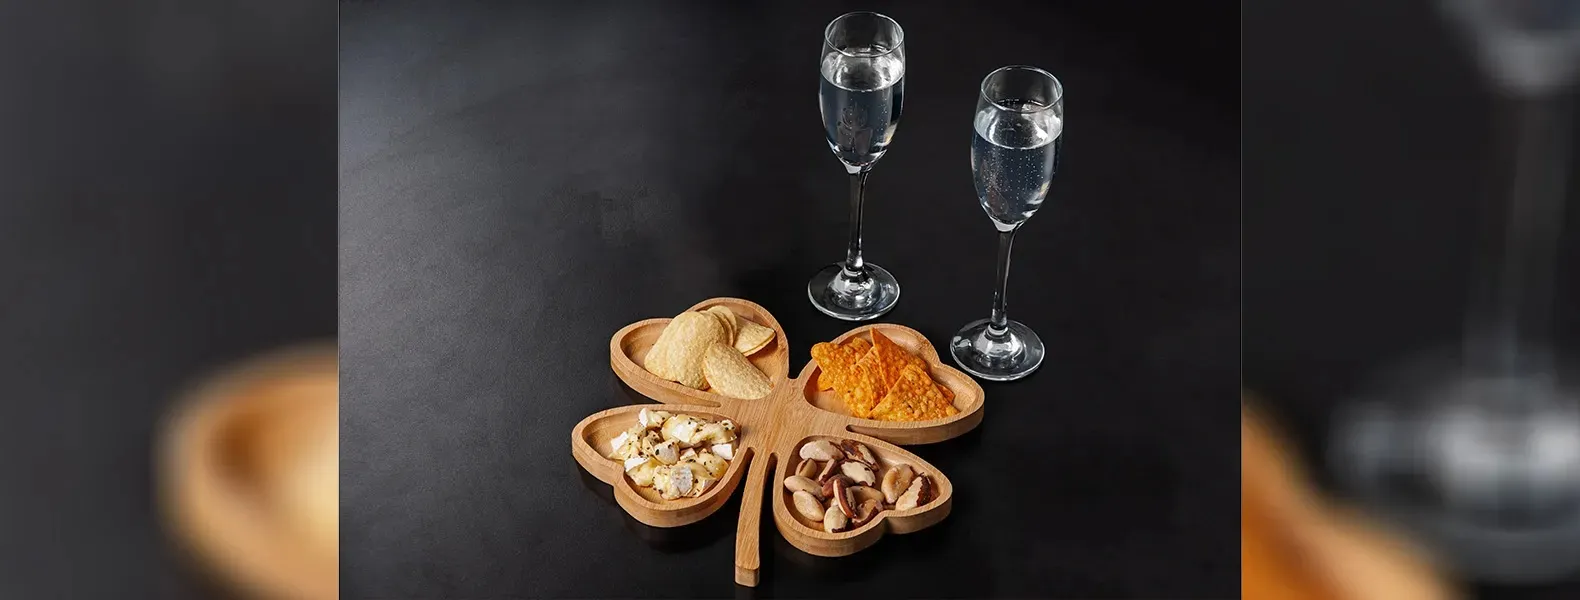 Kit para petisco e champanhe. Conta com petisqueira formato de trevo em bambu; Duas taças para champanhe em vidro; Espaço para garrafa com palha (NÃO ACOMPANHA GARRAFA). Estão perfeitamente acomodados em uma caixa para presentear.